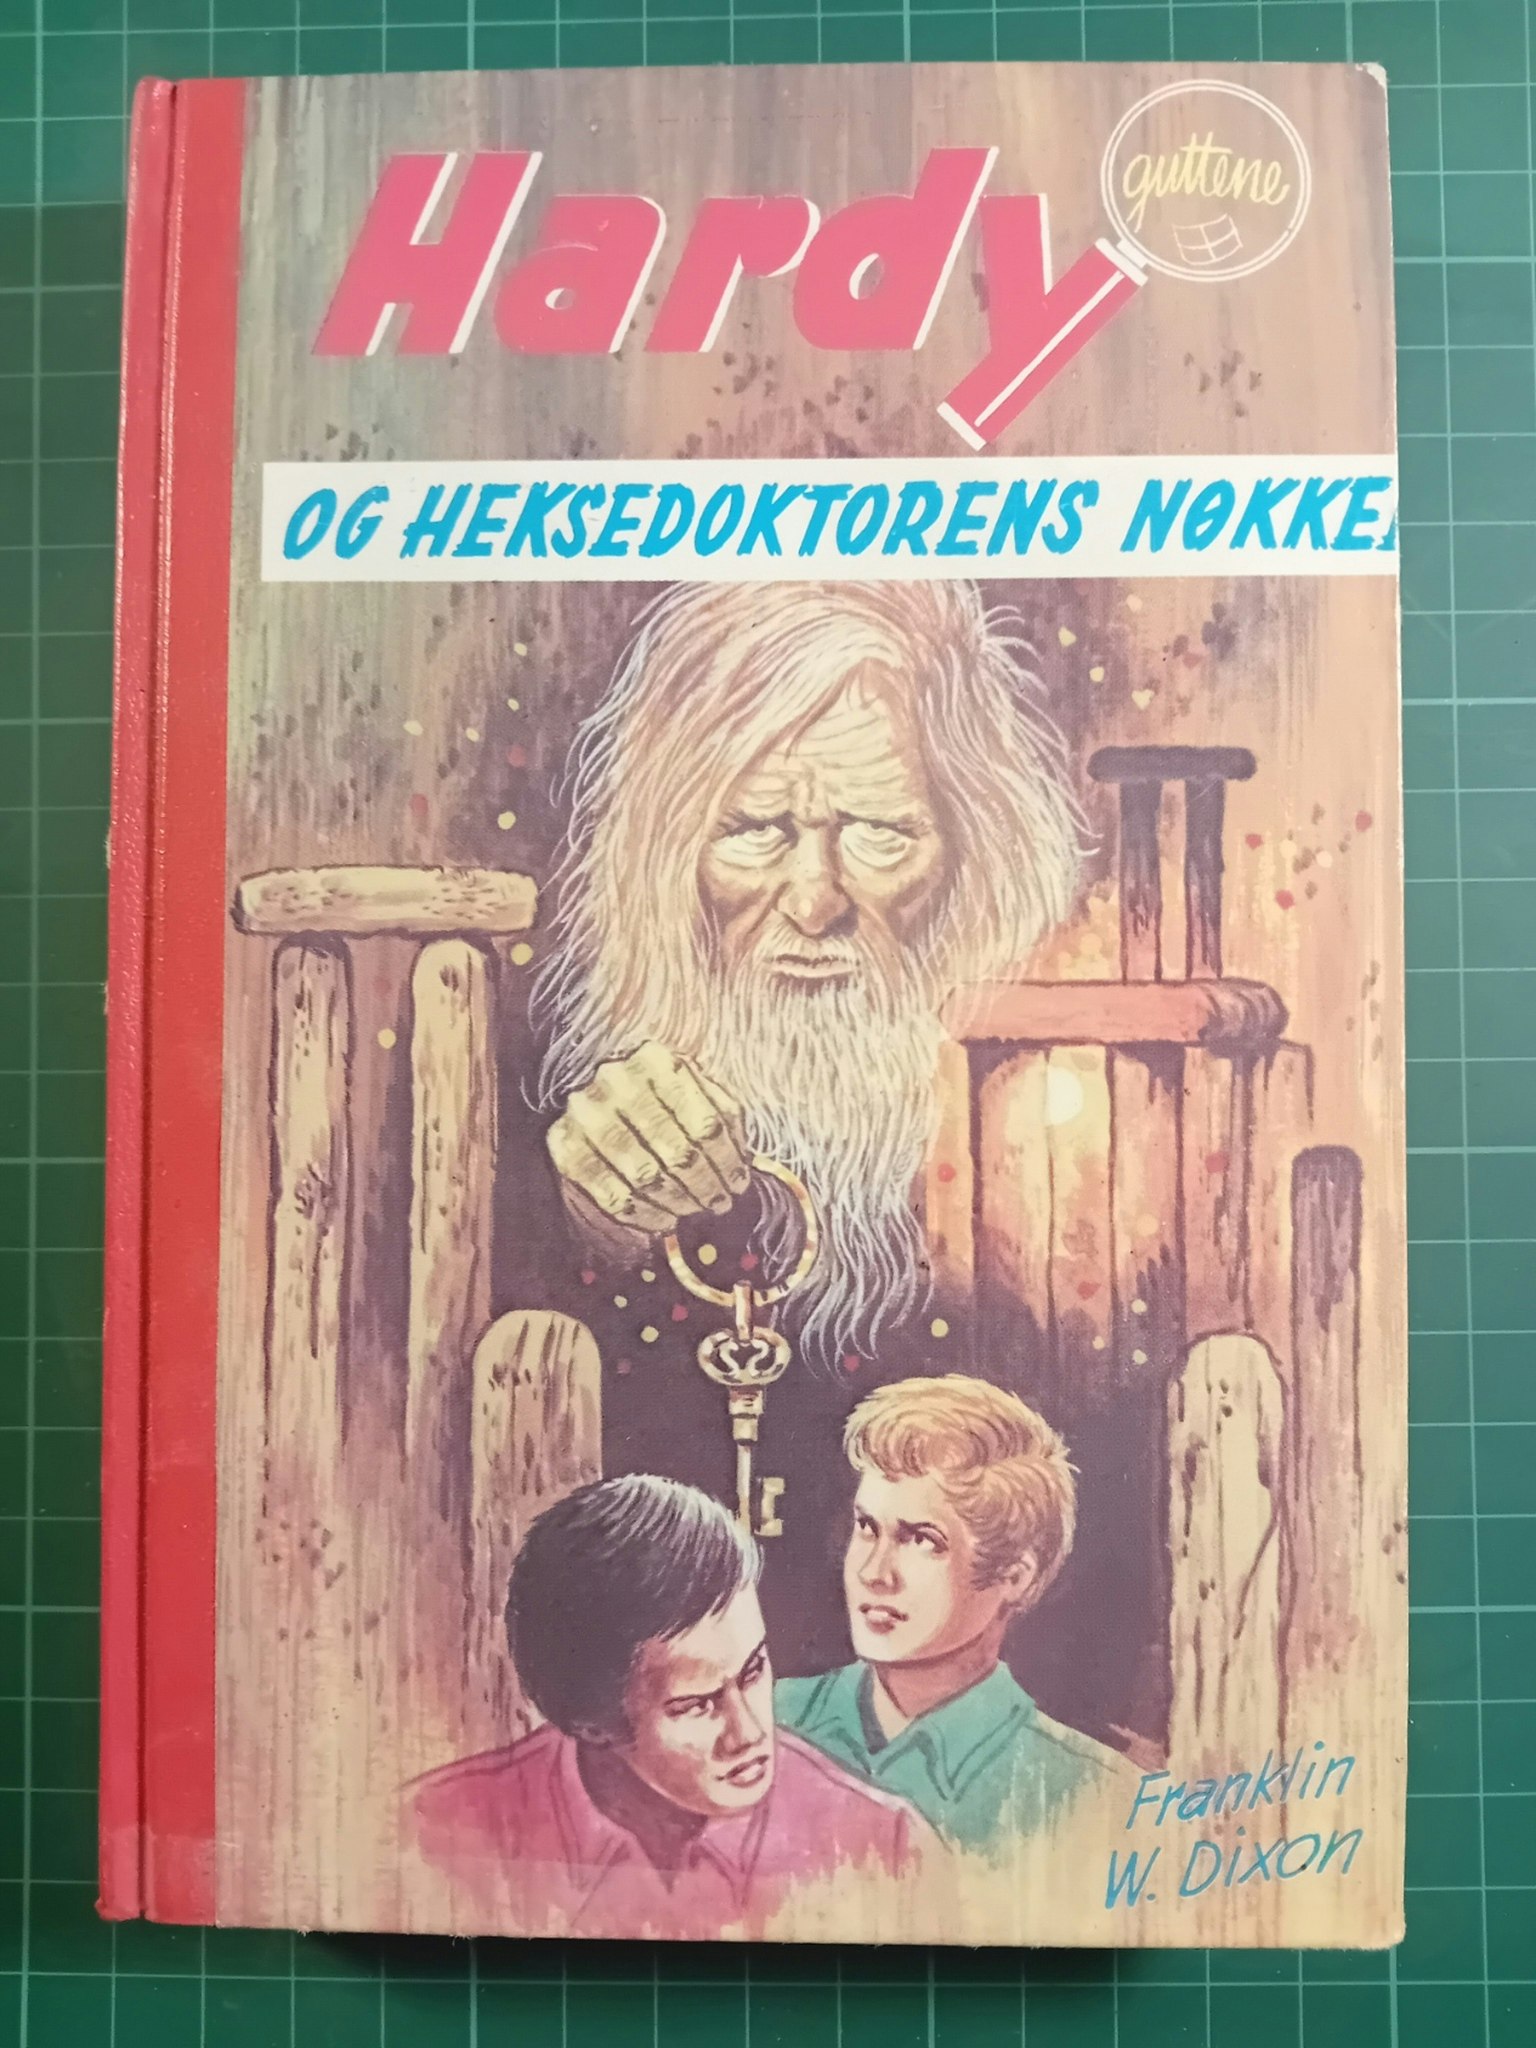 064: Hardy-guttene og heksedoktorens nøkkel